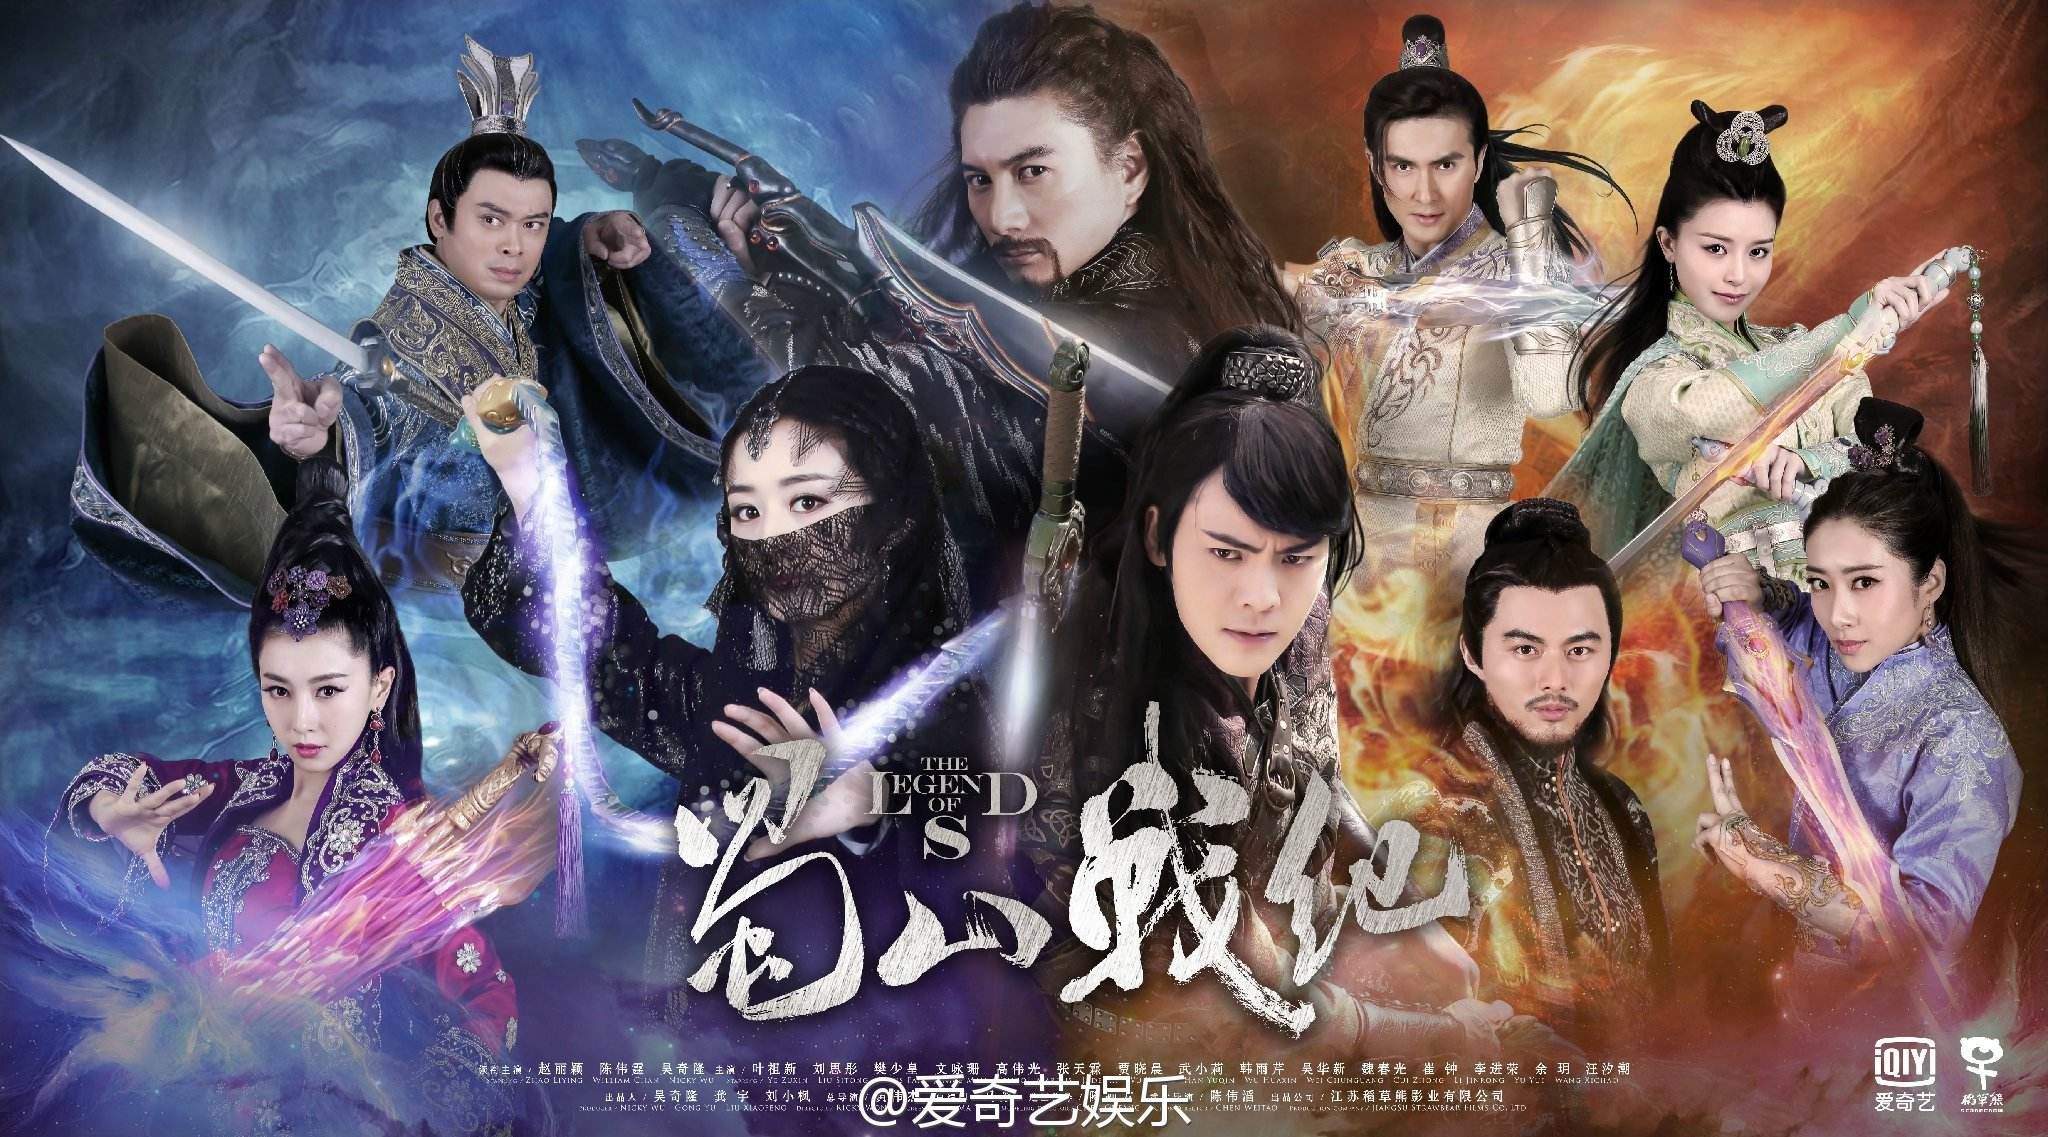 Xem Phim Thục Sơn Chiến Kỷ, The Legend of Zu 2015